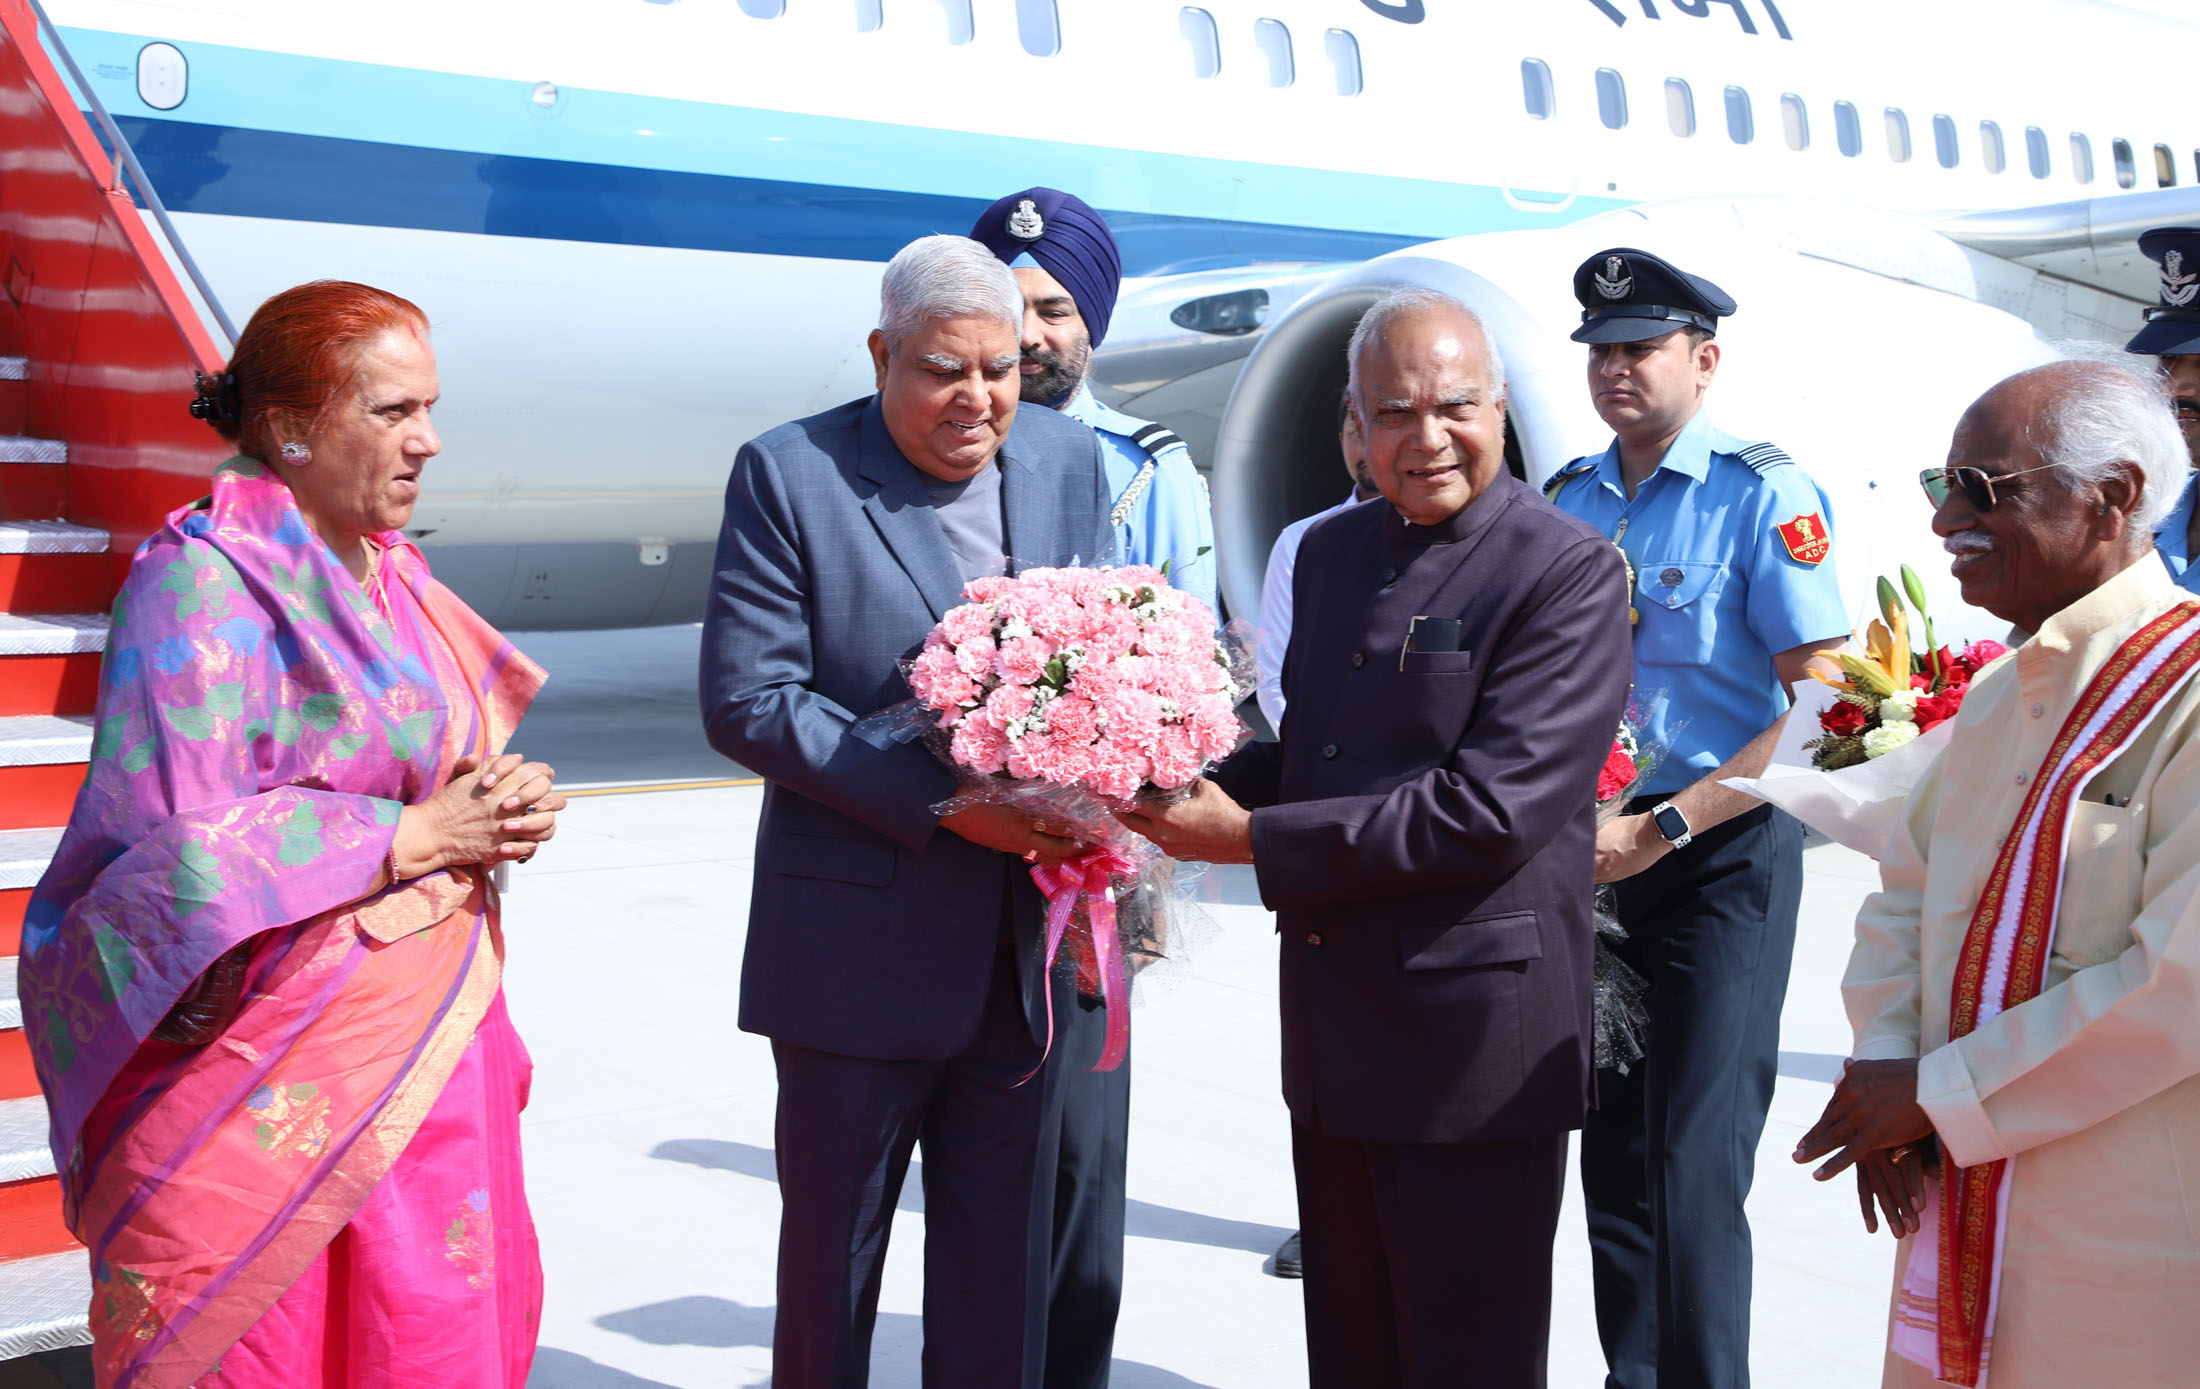 20 मई 2023 को चंडीगढ़ में हरियाणा के राज्यपाल श्री बंडारू दत्तात्रेय एवं पंजाब के राज्यपाल श्री बनवारीलाल पुरोहित के द्वारा उपराष्ट्रपति श्री जगदीप और उनकी धर्मपत्नी डॉ सुदेश धनखड़ का स्वागत किया गया । 